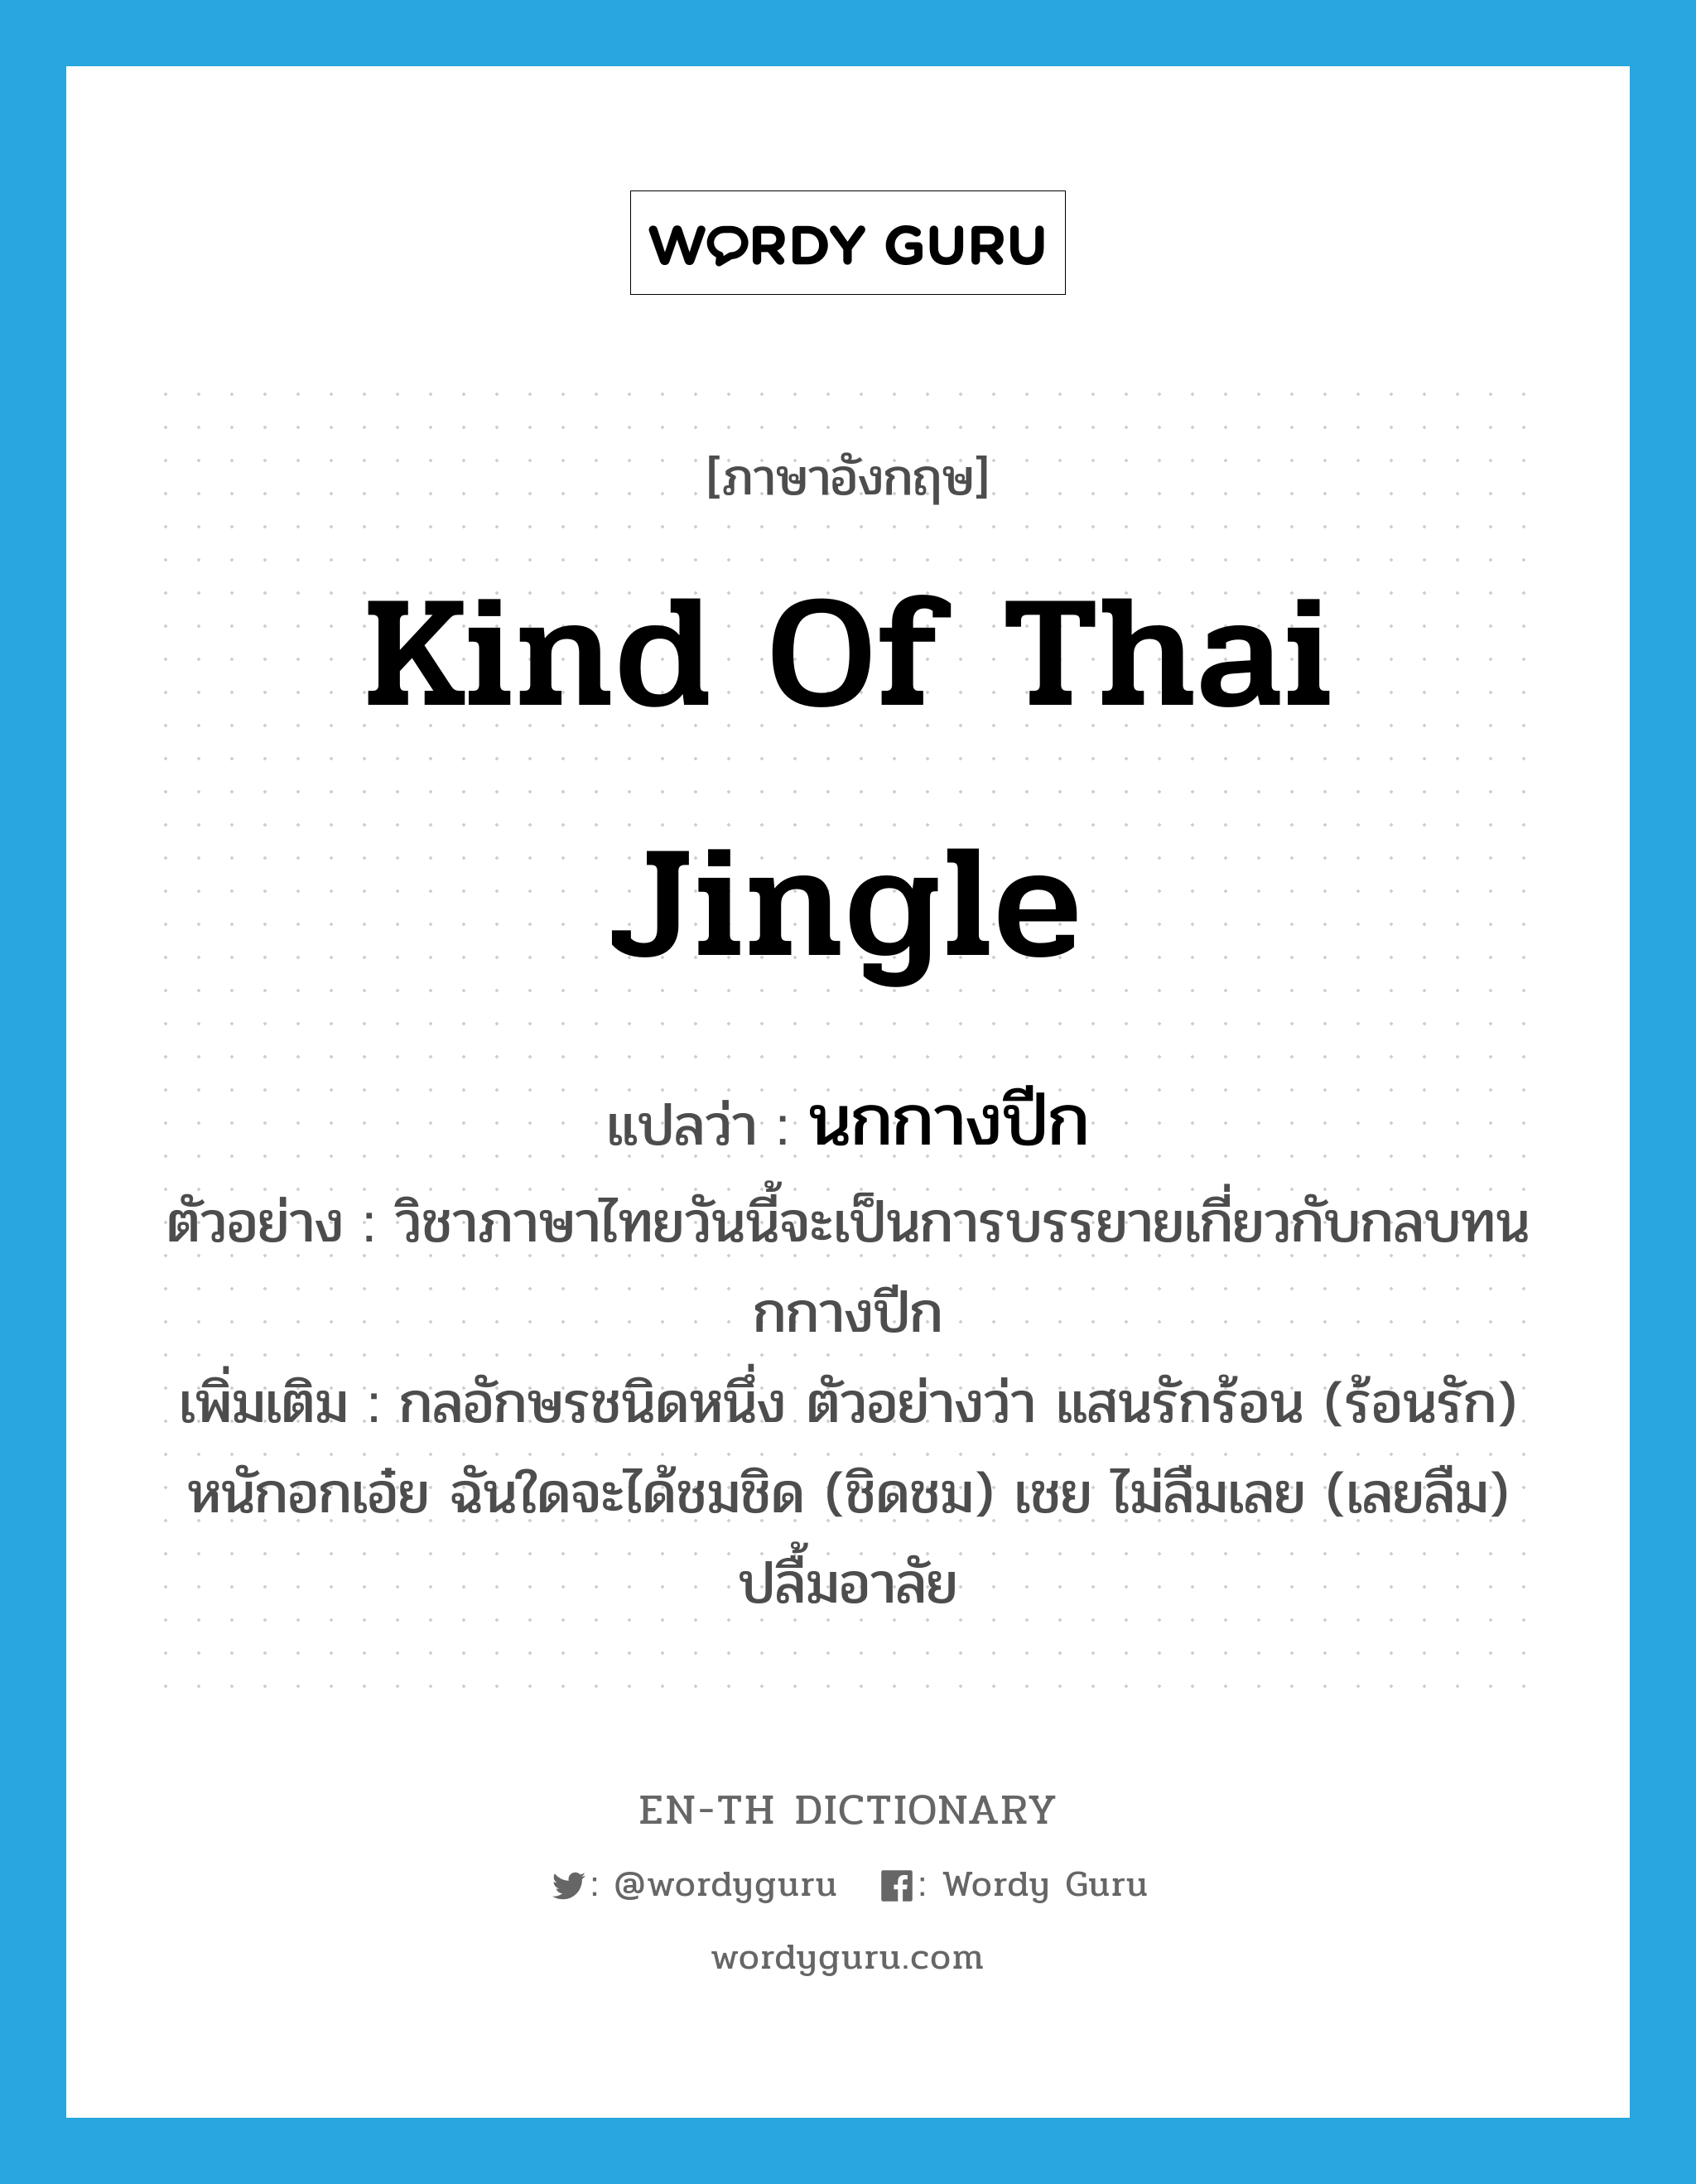 นกกางปีก ภาษาอังกฤษ?, คำศัพท์ภาษาอังกฤษ นกกางปีก แปลว่า kind of Thai jingle ประเภท N ตัวอย่าง วิชาภาษาไทยวันนี้จะเป็นการบรรยายเกี่ยวกับกลบทนกกางปีก เพิ่มเติม กลอักษรชนิดหนึ่ง ตัวอย่างว่า แสนรักร้อน (ร้อนรัก) หนักอกเอ๋ย ฉันใดจะได้ชมชิด (ชิดชม) เชย ไม่ลืมเลย (เลยลืม) ปลื้มอาลัย หมวด N